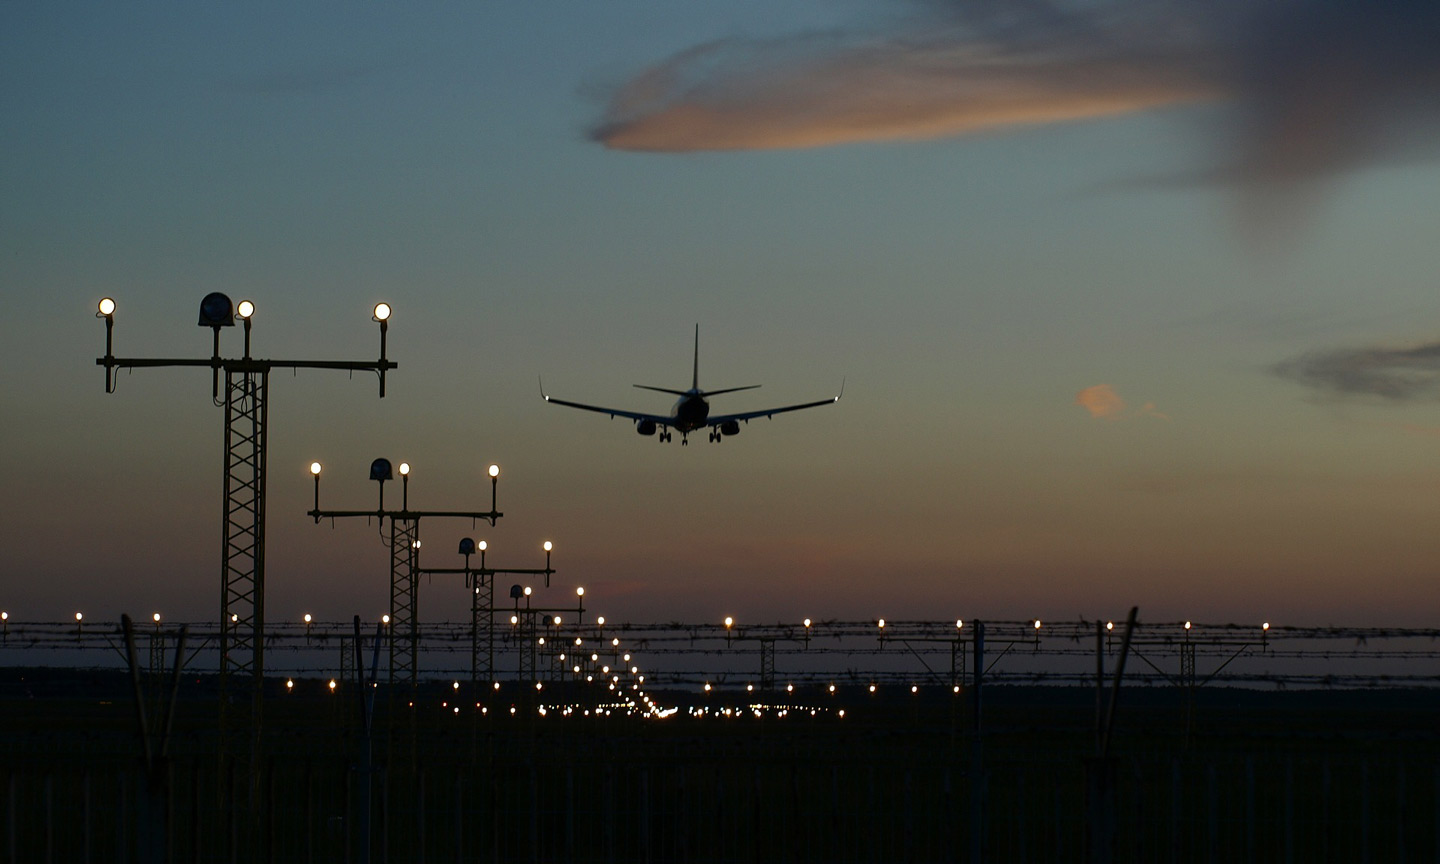 Plane landing at airport at night